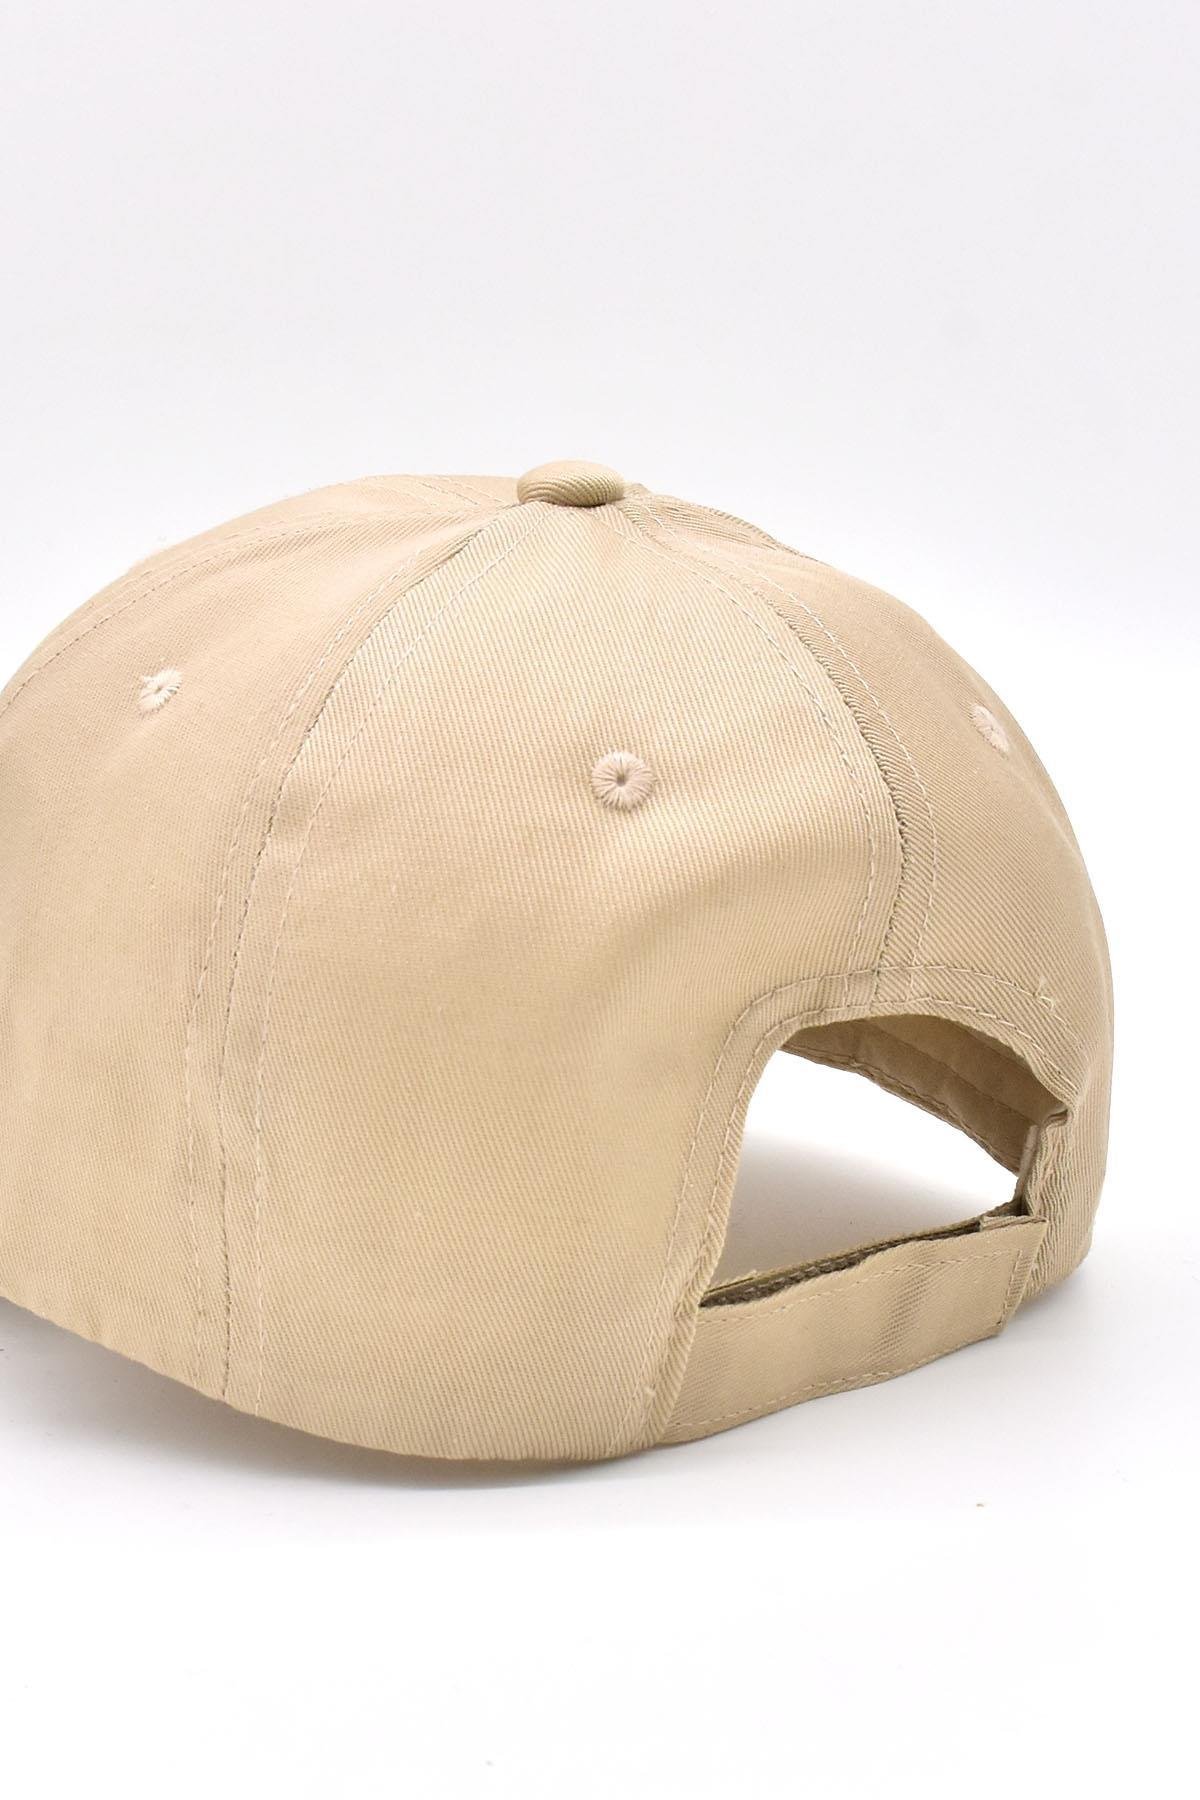 Unisex Ayarlanabilir Spor Basic Kep Şapka | Siyah Bej 2li Paket